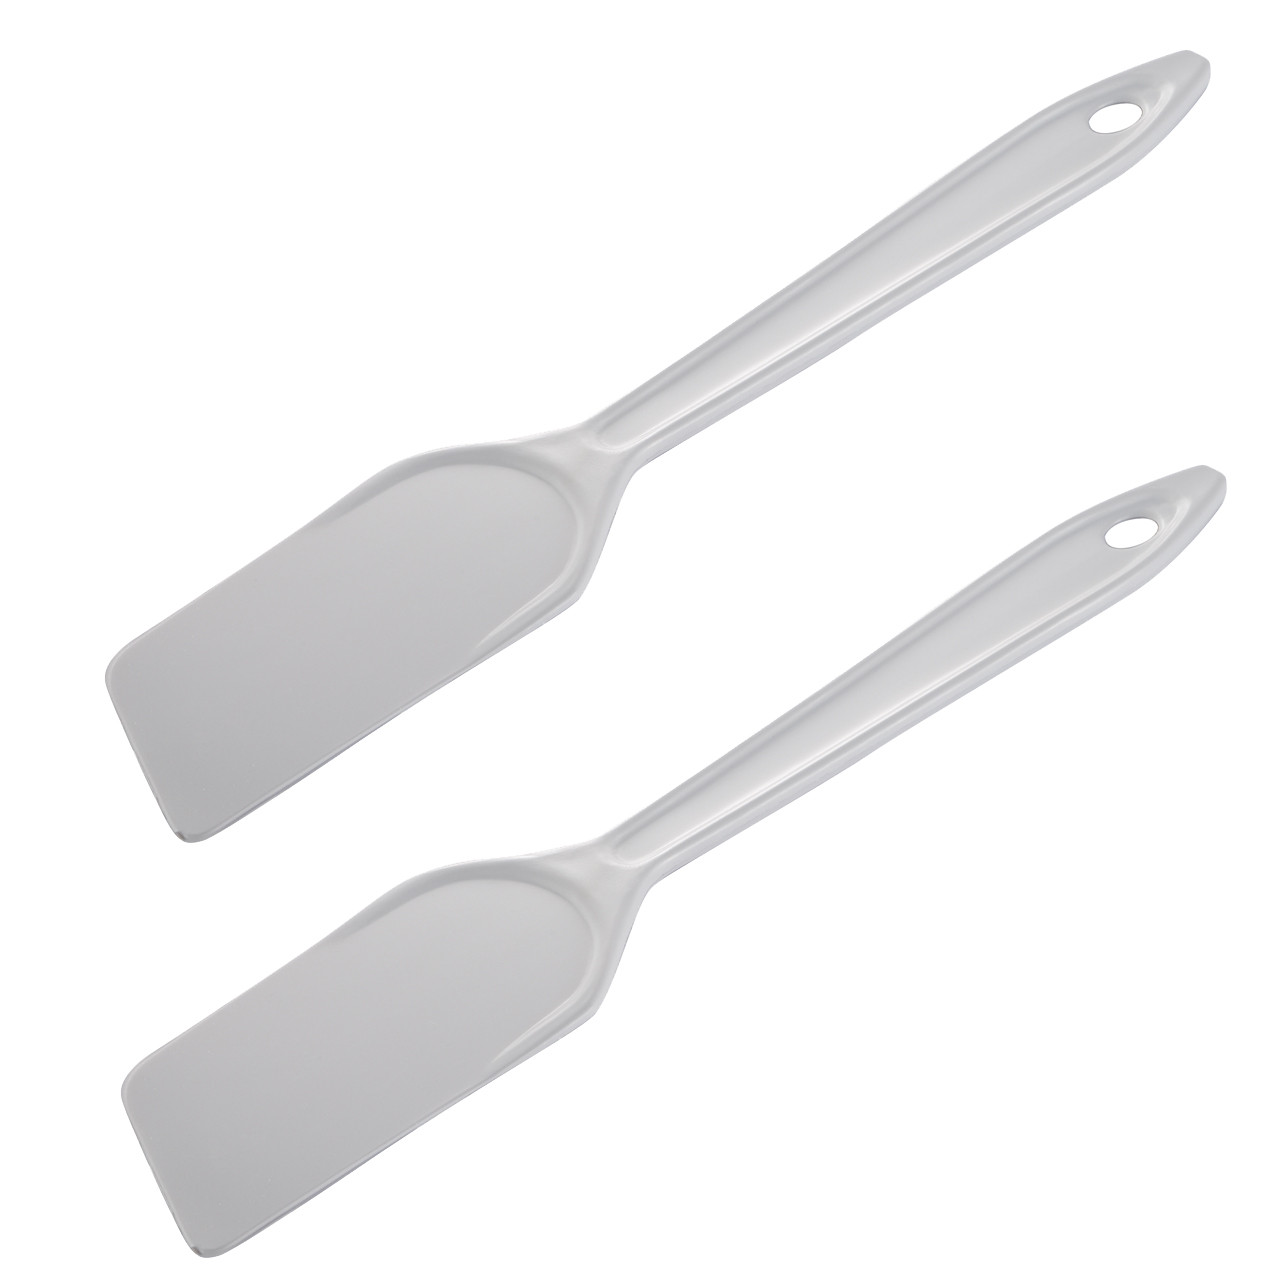 Slickepott - the rubber scraper/spatula